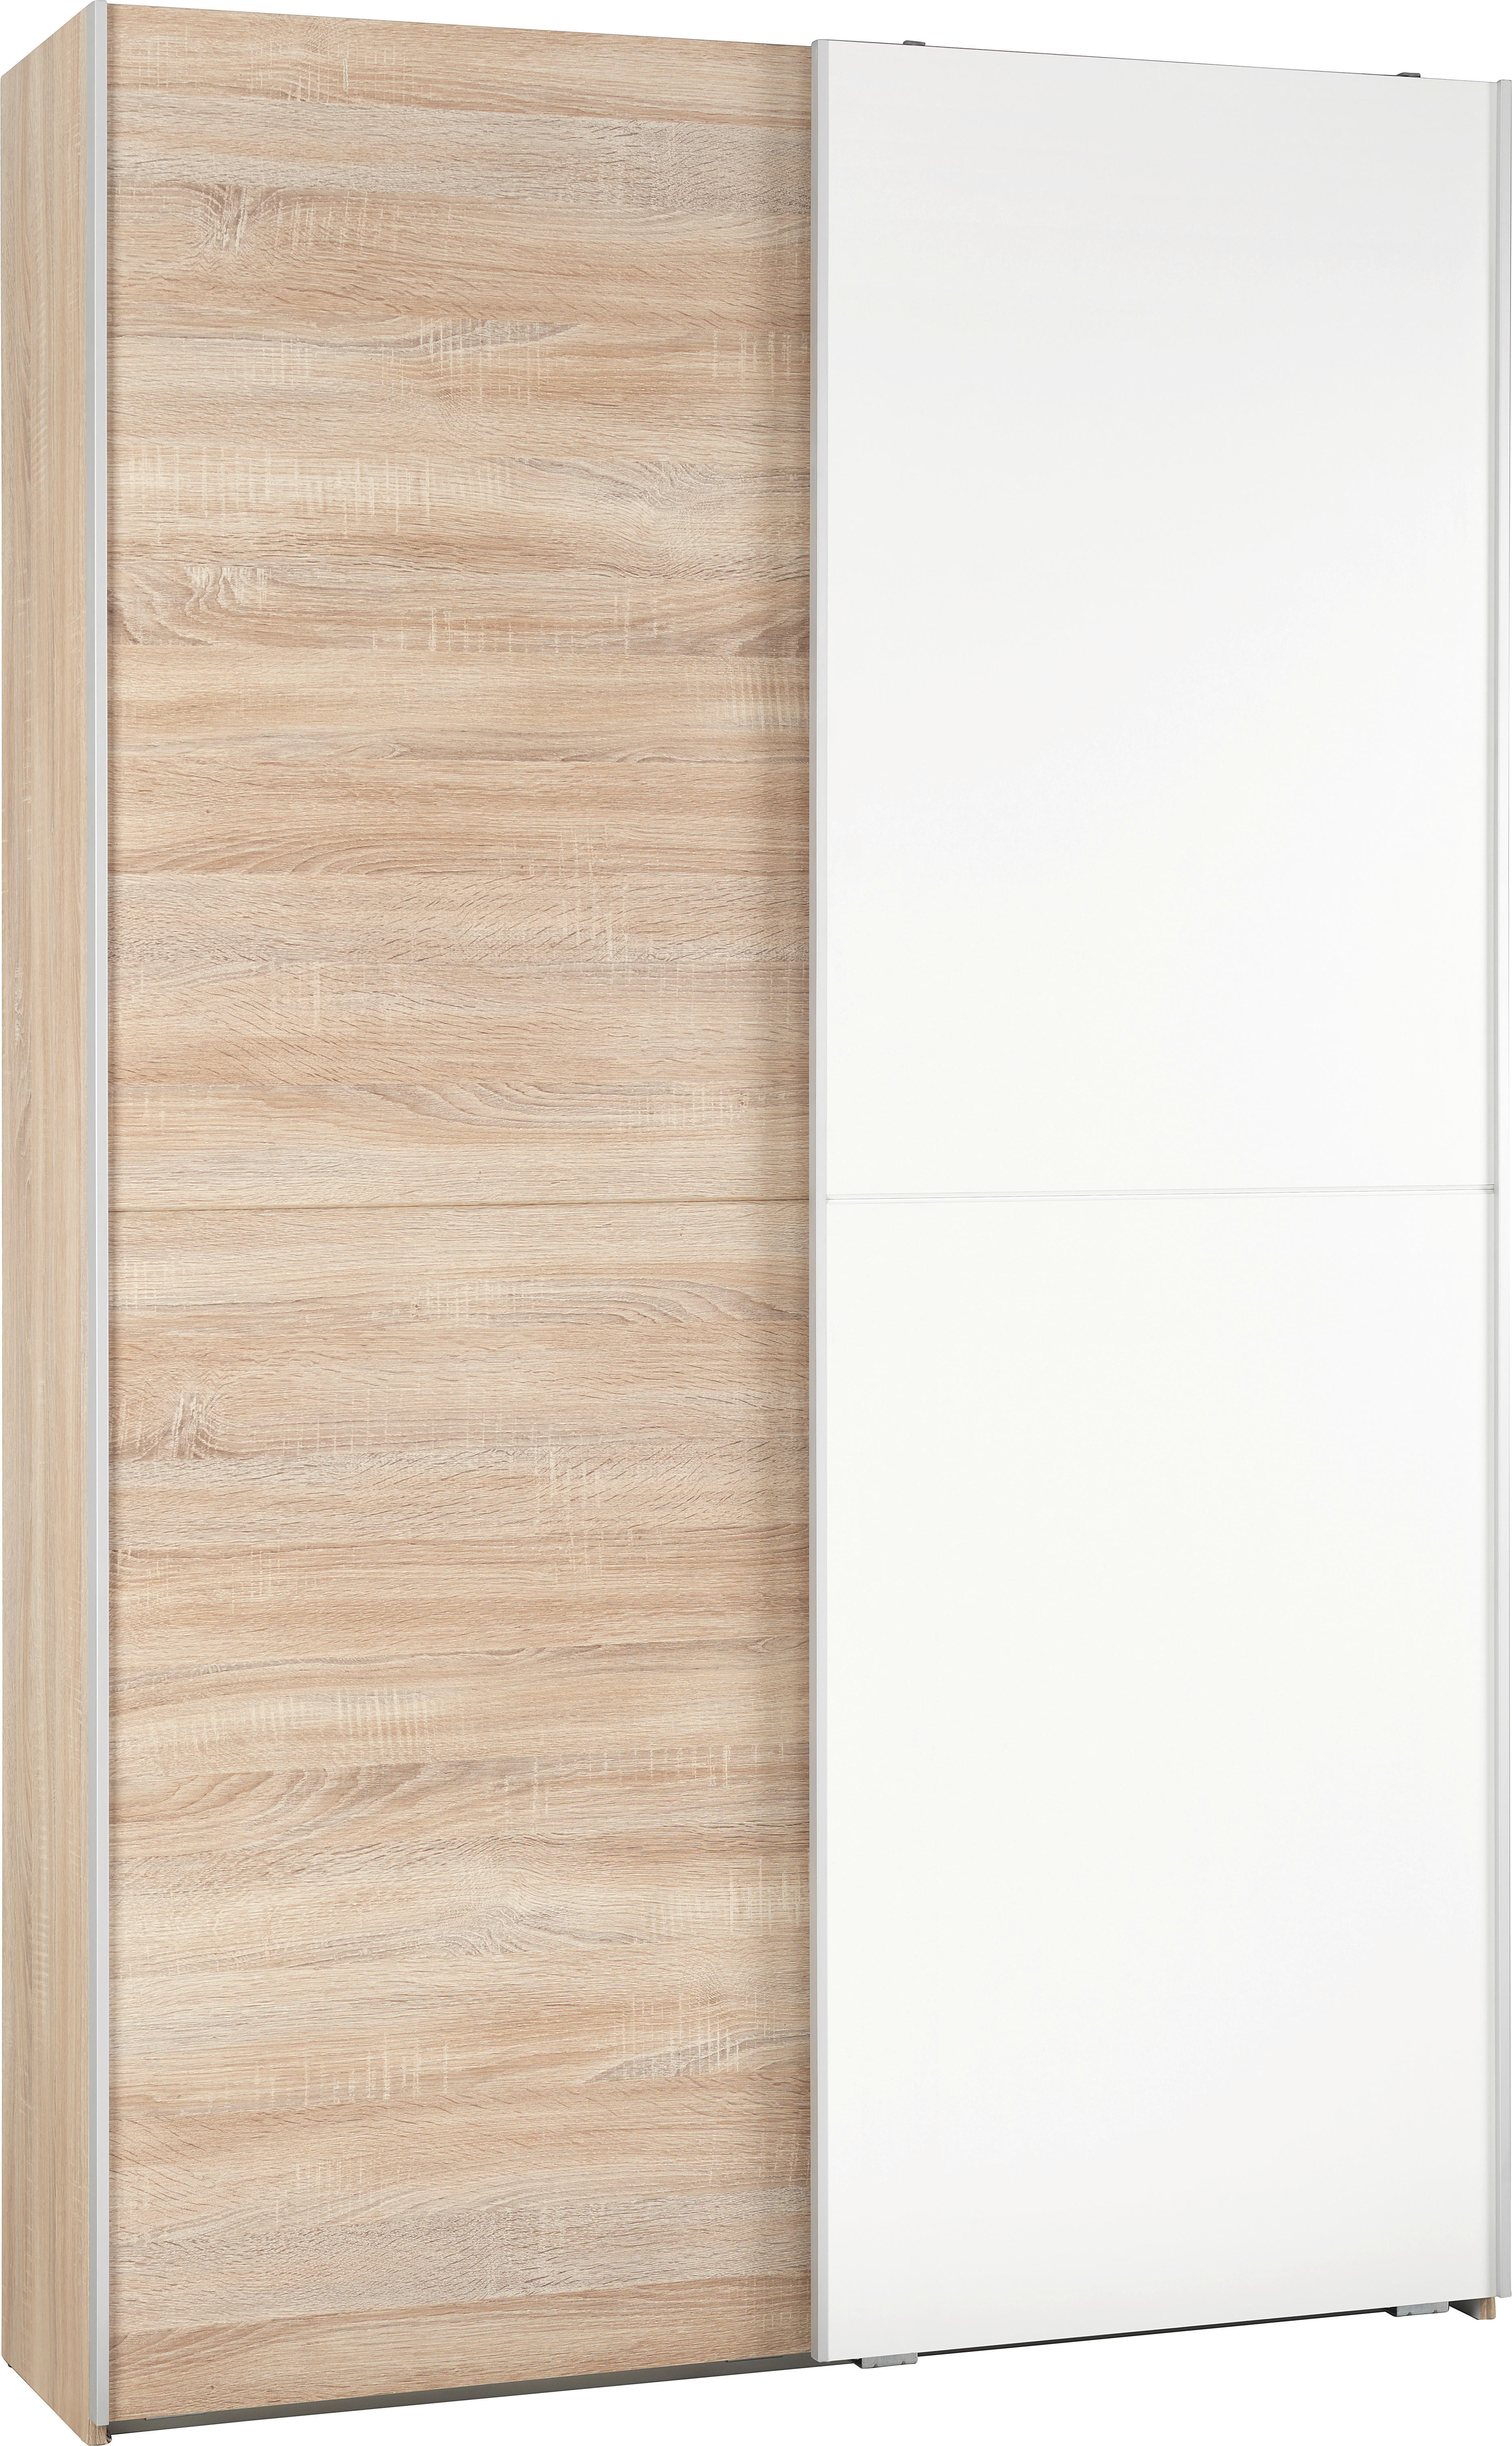 Carryhome VÍCEÚČELOVÁ SKŘÍŇ, bílá, Sonoma dub, 125/195/38 cm - bílá,Sonoma dub - kompozitní dřevo